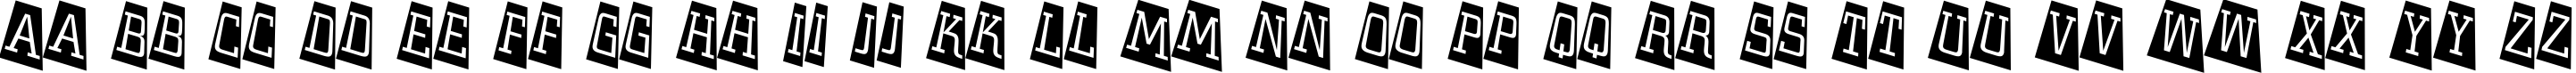 Пример написания английского алфавита шрифтом a_CityNovaTtlCmTwLt